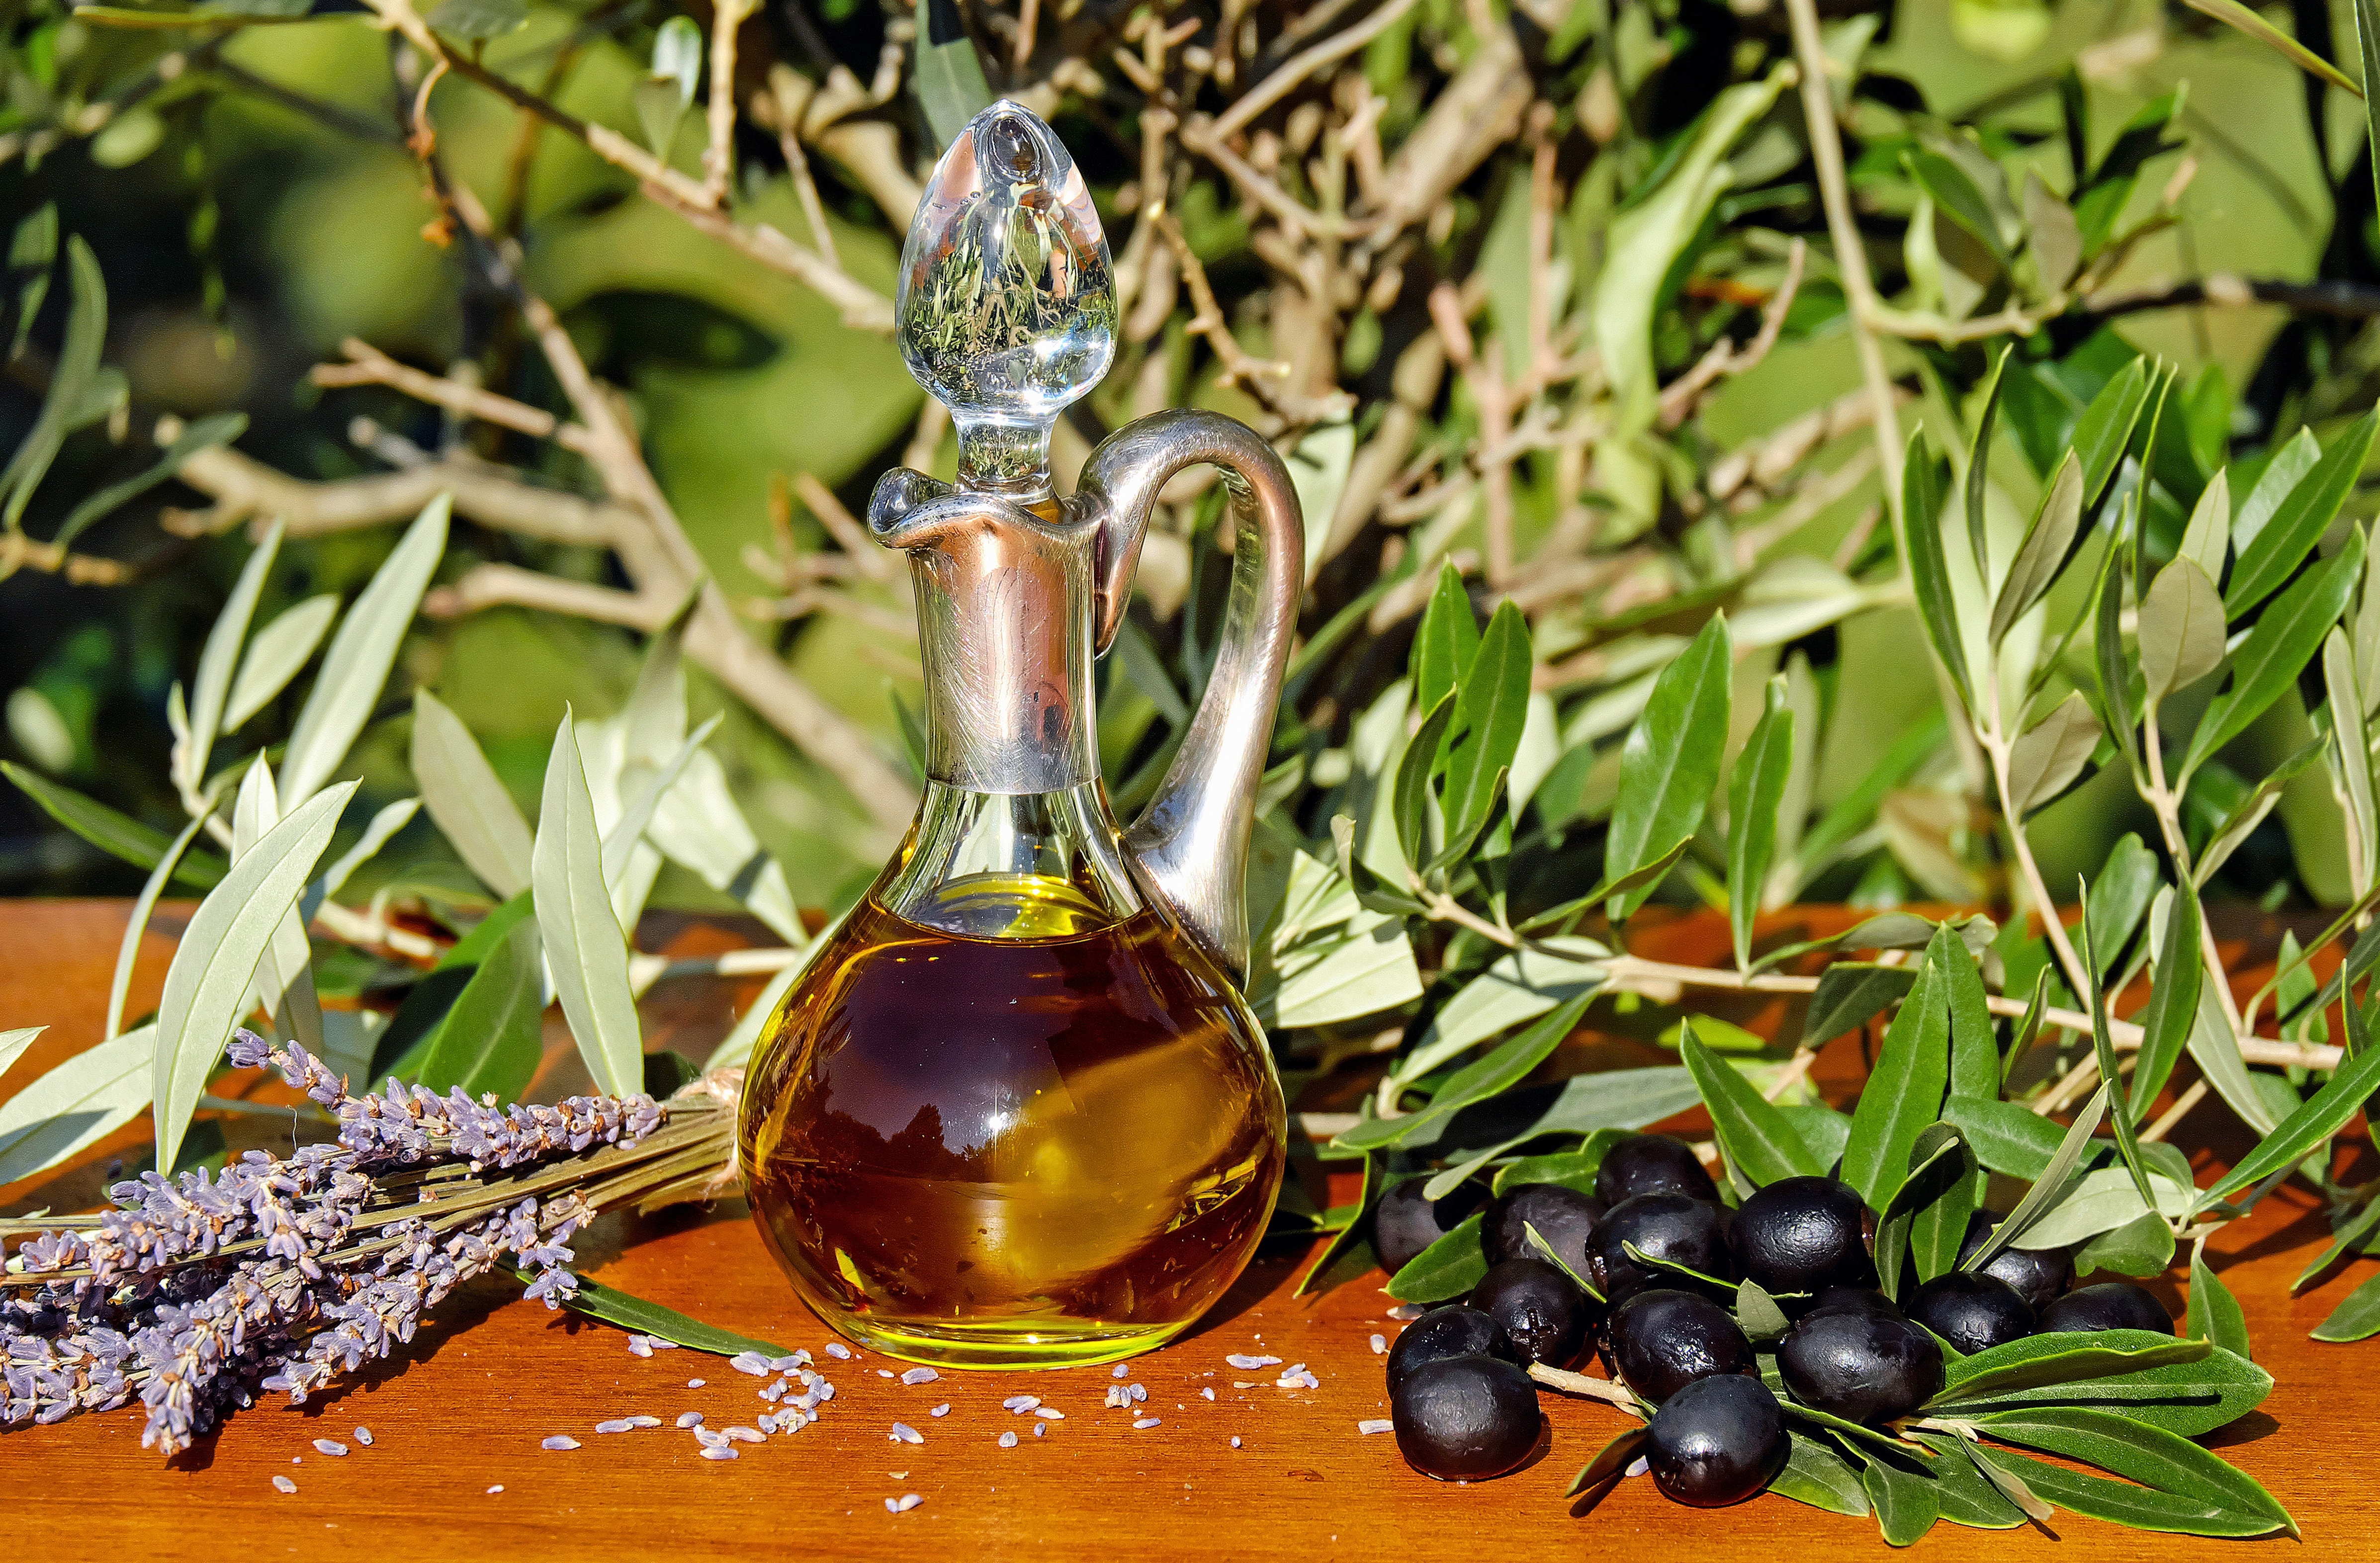 Производство оливкового масла. Зайтун барги. Оливковое масло. Масло оливы. Оливковое масло в кувшине.